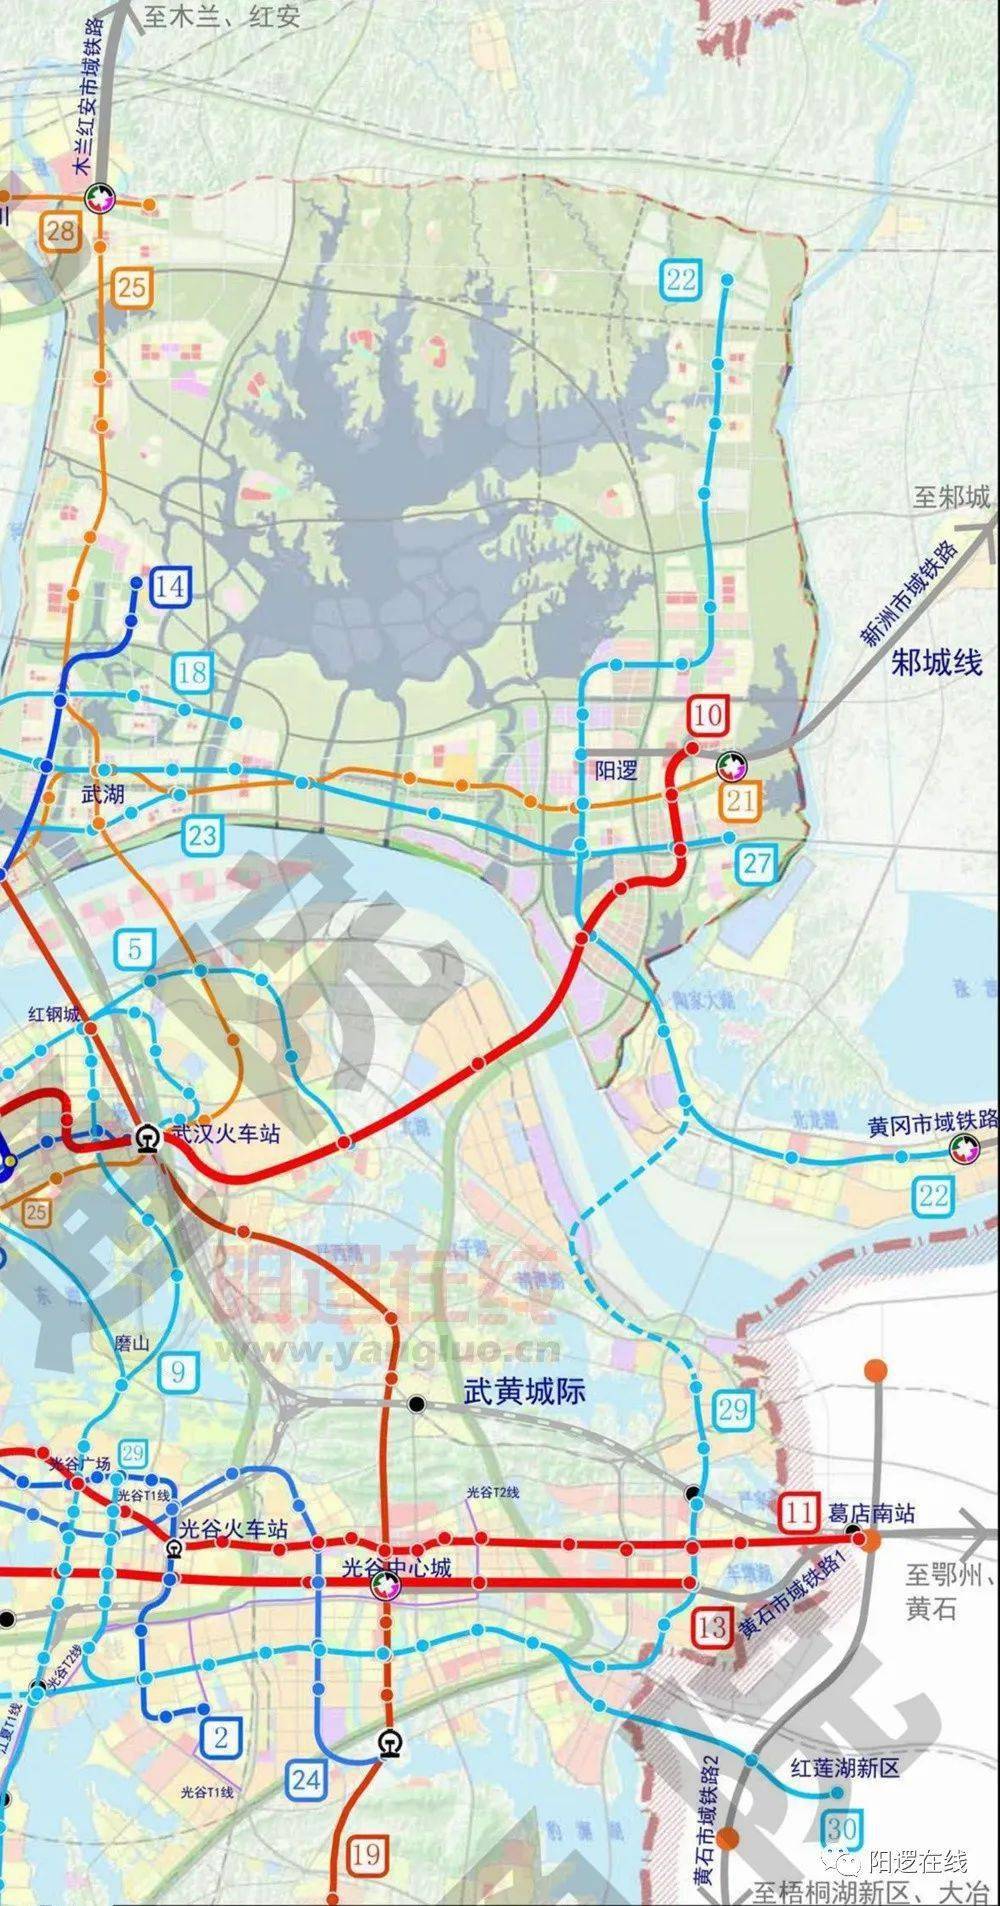 阳逻居民可乘地铁直达光谷两条地铁在武汉站实现换乘将与19号线共用变